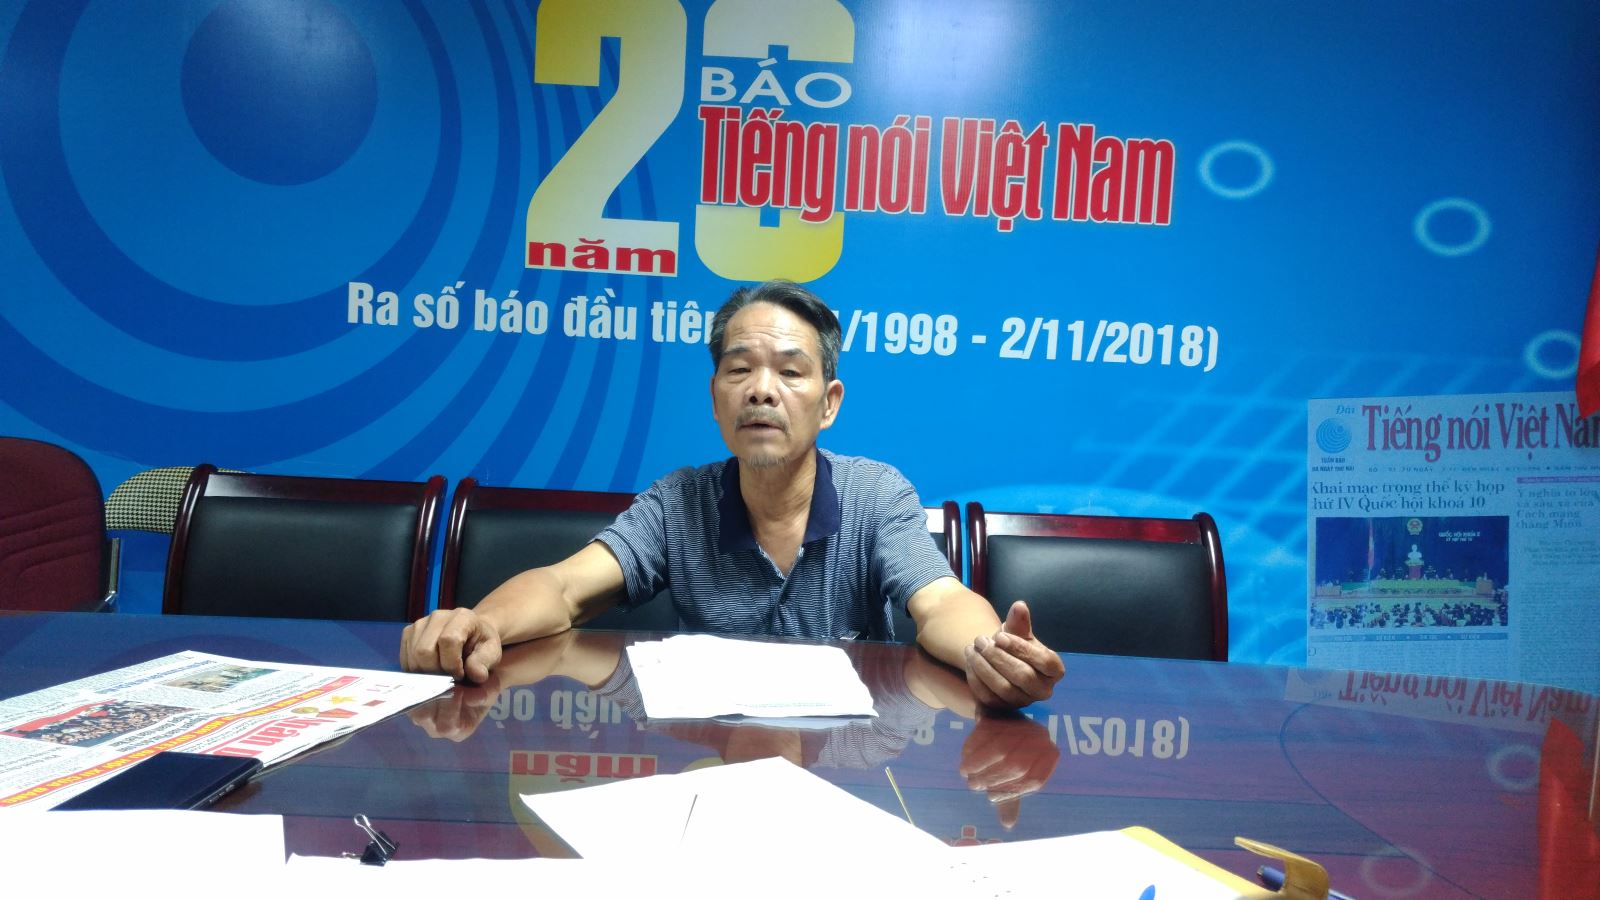 Ông Trần Ngọc Thanh đến TS- Báo TNVN gửi đơn tố cáo